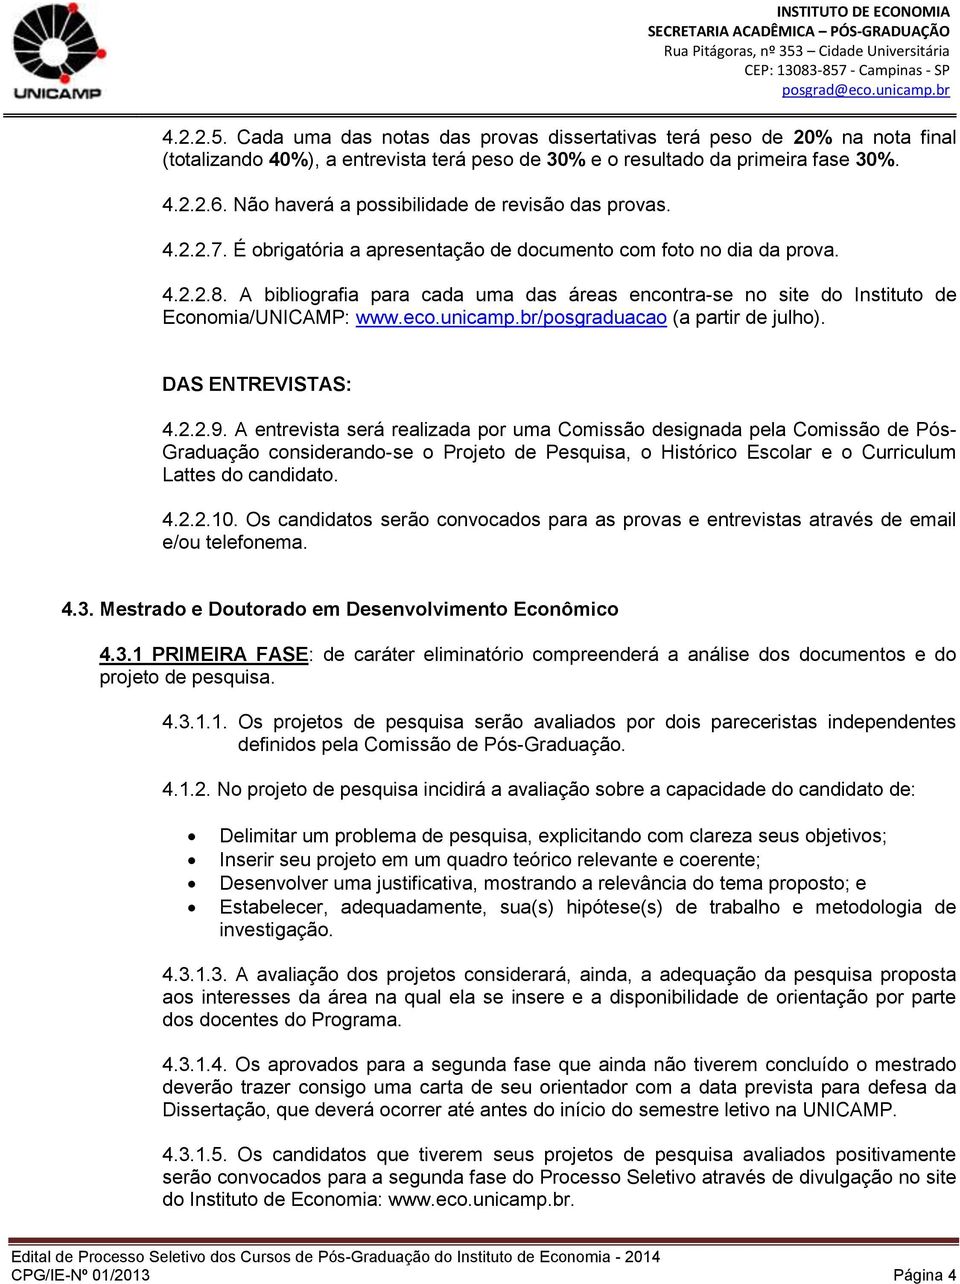 A bibliografia para cada uma das áreas encontra-se no site do Instituto de Economia/UNICAMP: www.eco.unicamp.br/posgraduacao (a partir de julho). DAS ENTREVISTAS: 4.2.2.9.